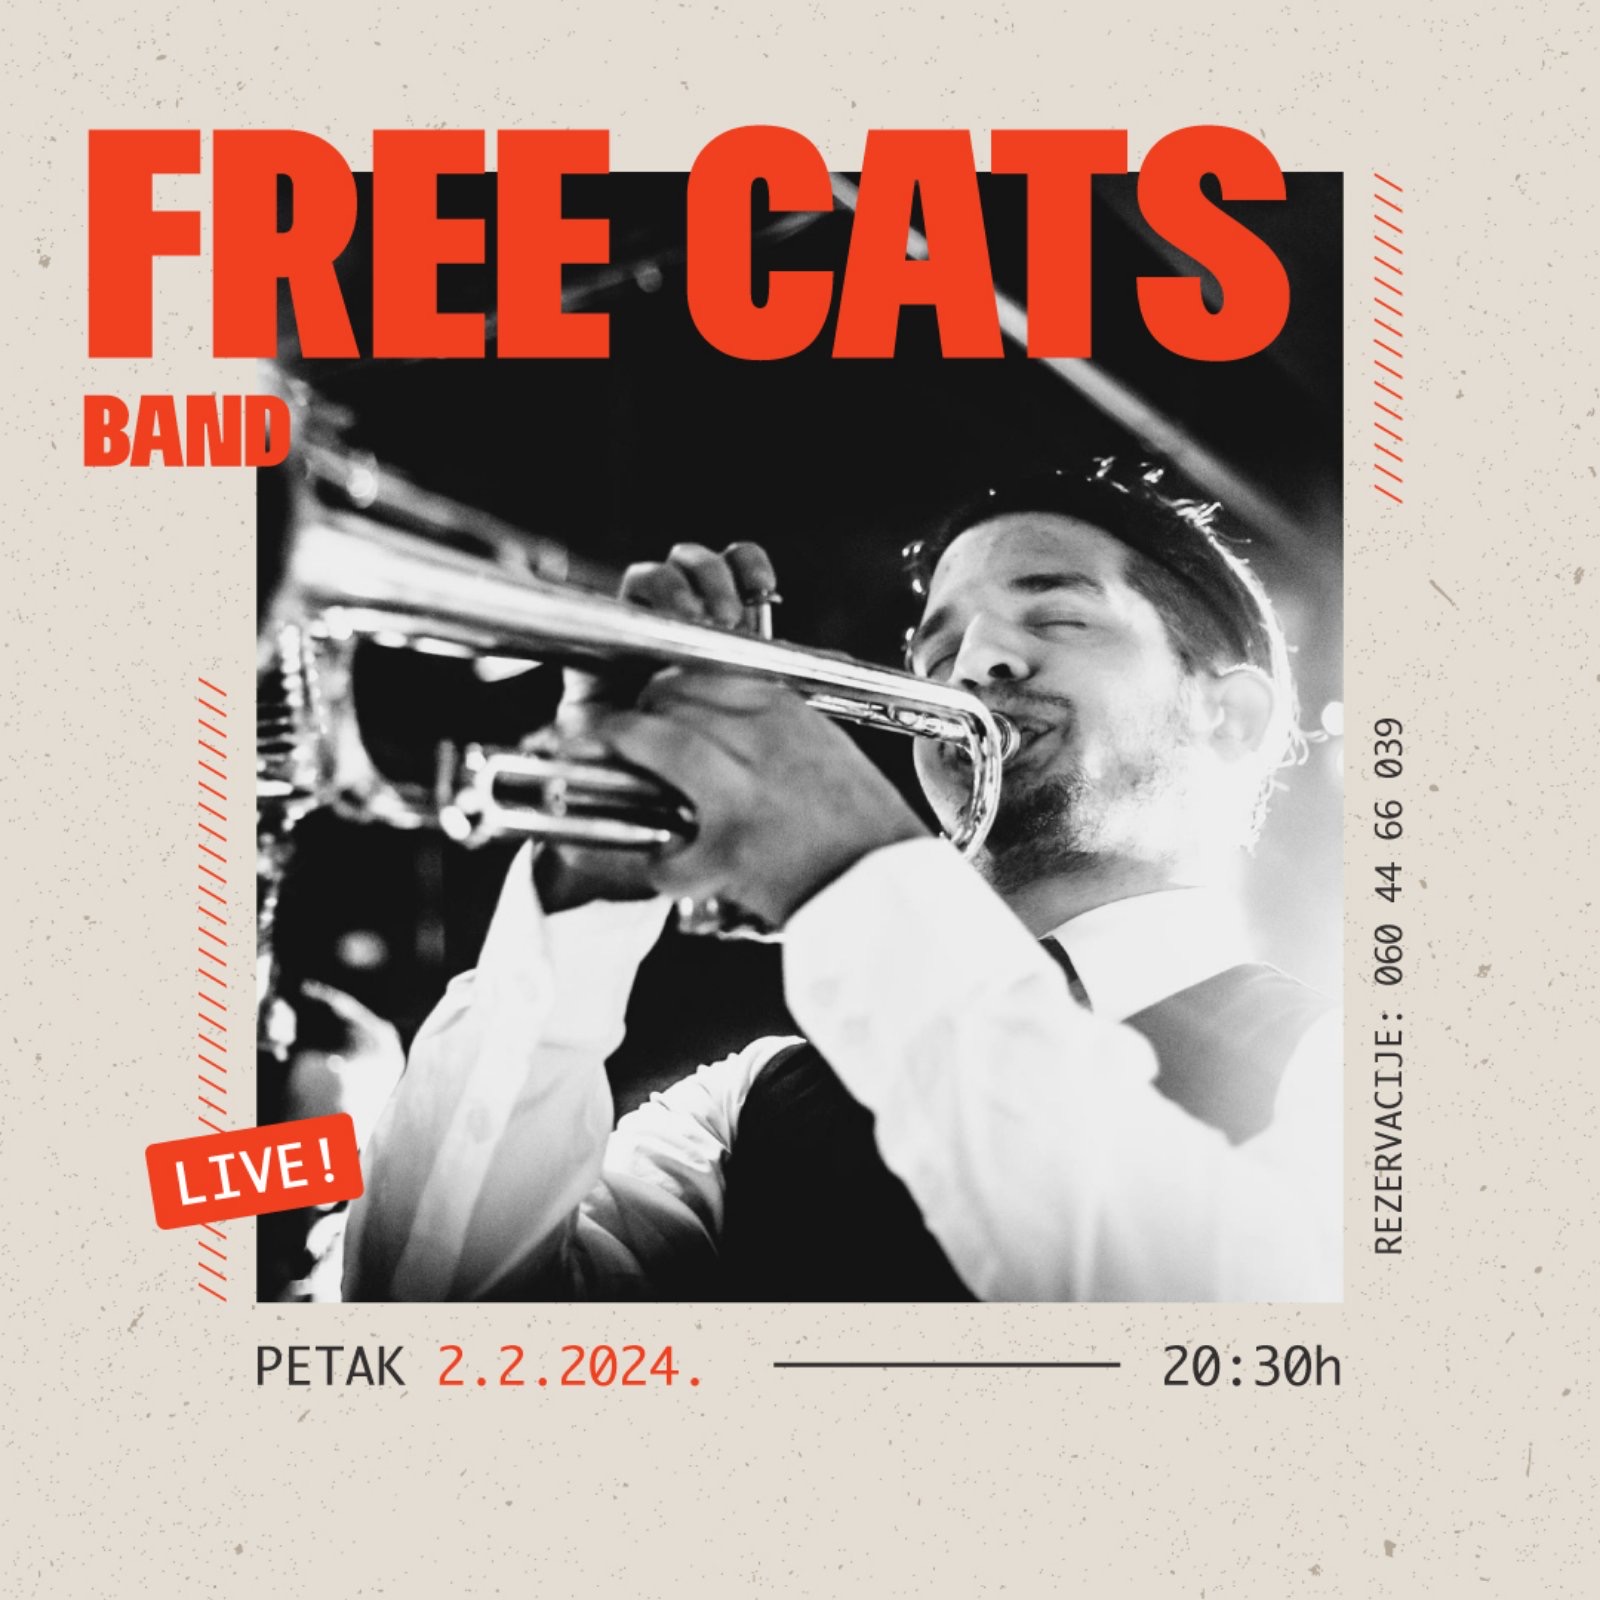 Ovog petka uživajte u ritmu koji traje celu noć! Free cats band vas vodi na uzbudljivo muzičko putovanje kroz različite žanrove džeza. Vidimo se 2.2. na adresi Žorža Klemansoa 19.